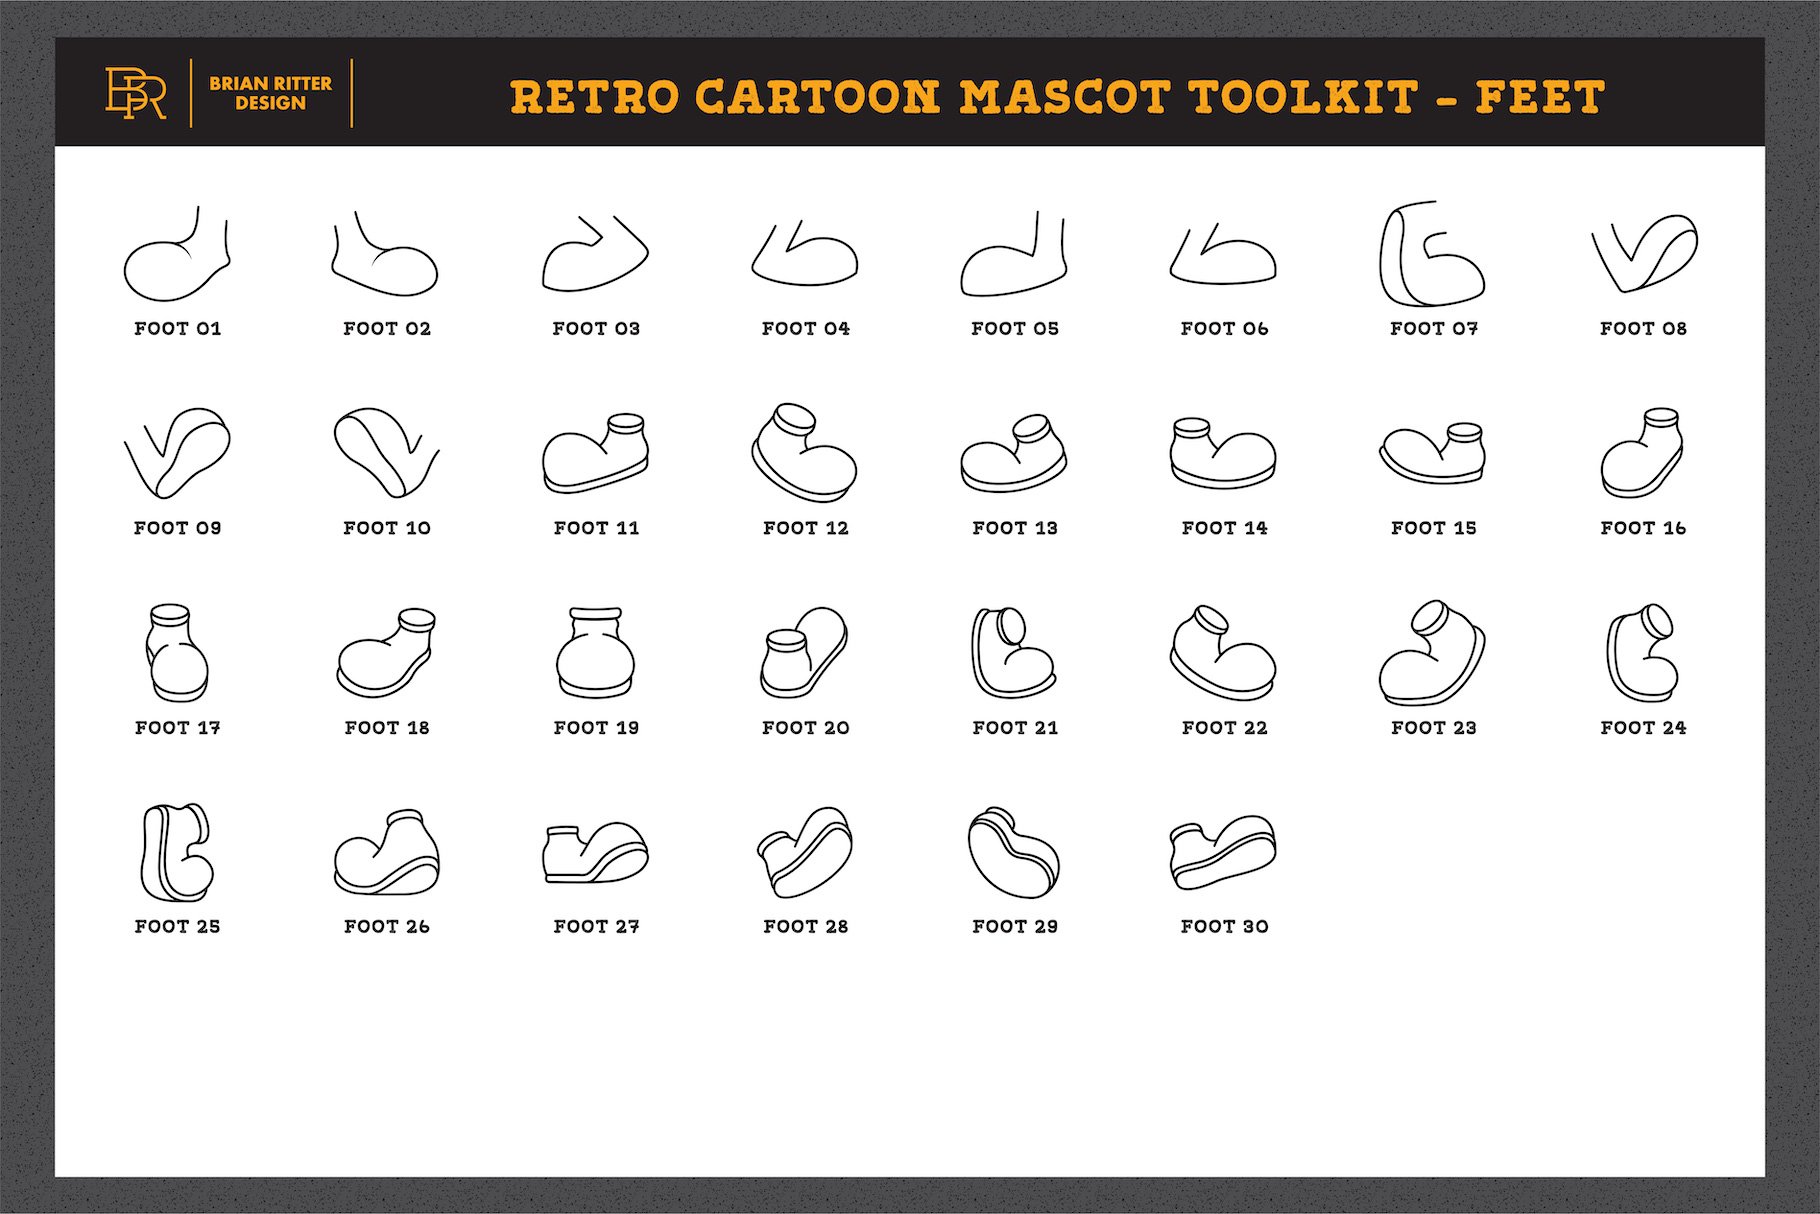 Retro cartoon mascot toolkit - feet.